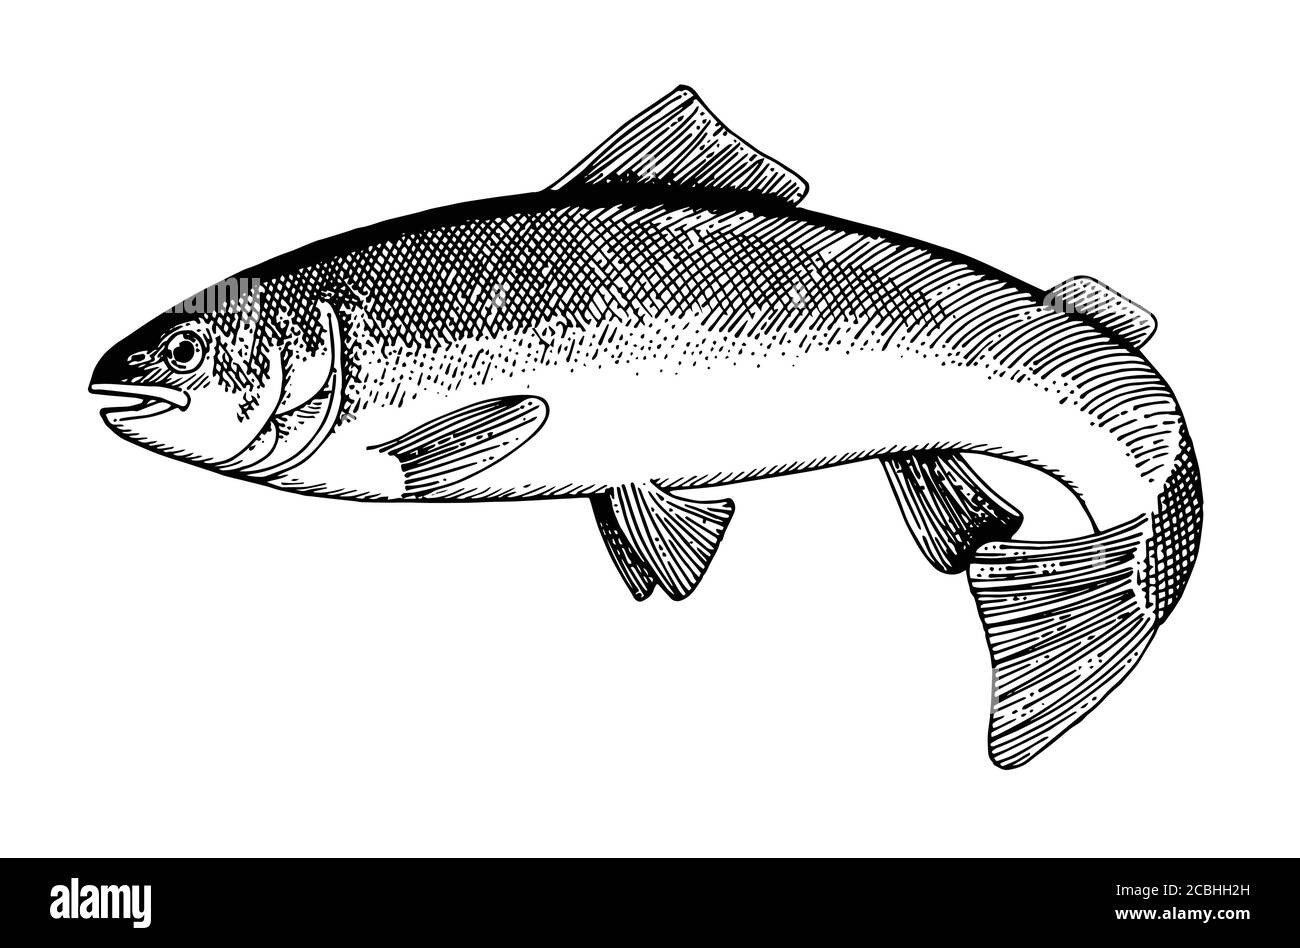 Hand Zeichnung Fisch Vektor. Bleistift, Papier, Filzstift. Isoliertes Objekt auf weißem Hintergrund. Fisch in Bewegung, in vivo. Teich, Fluss, Meer. Wedelt Schwanz, fl Stock Vektor